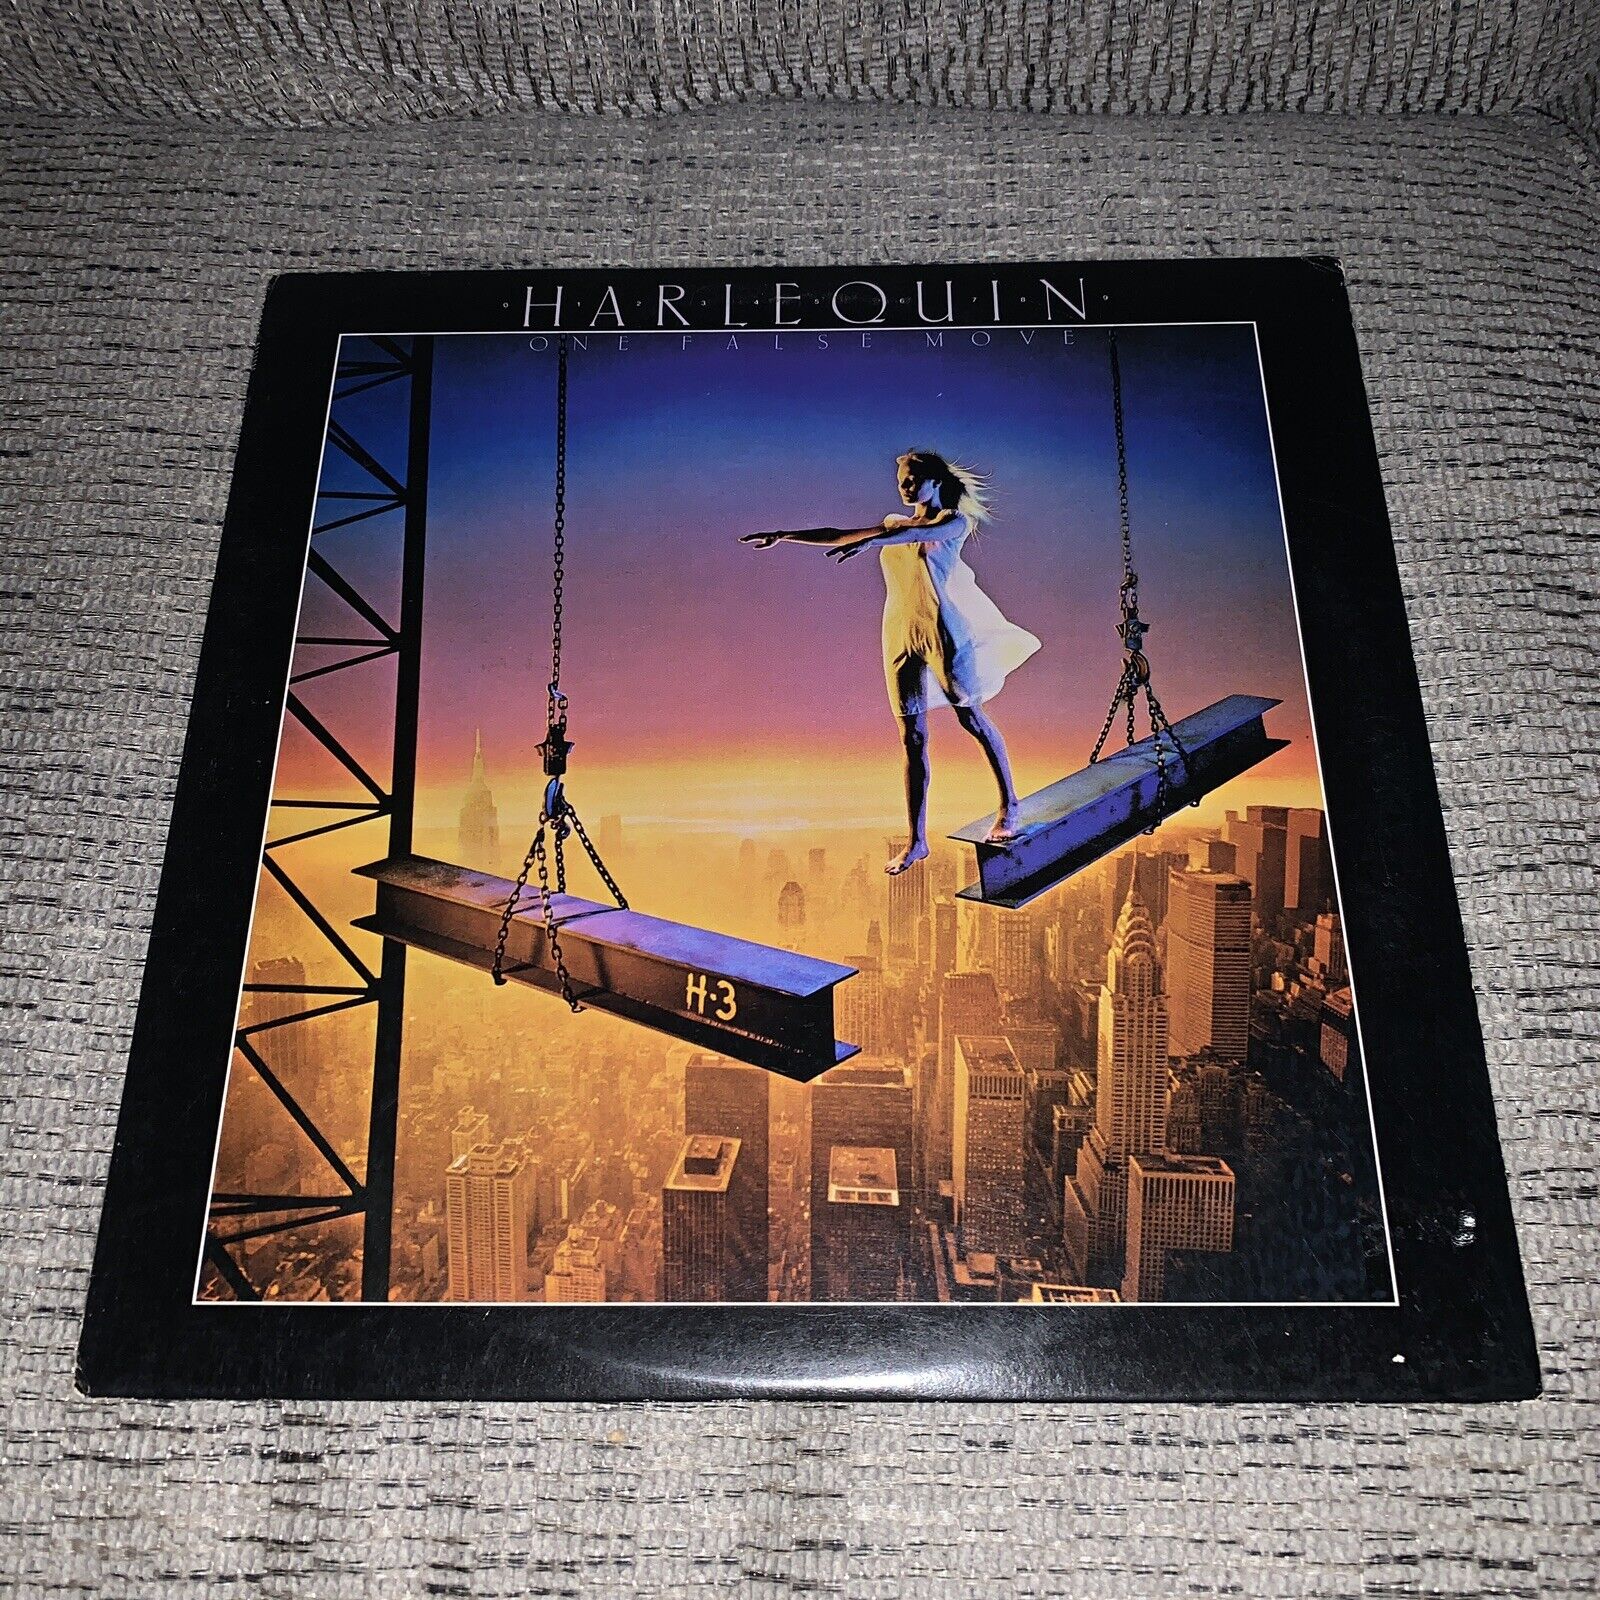 Harlequin “One False Move” Promo LP/Columbia ARC 38090 (EX) 1982